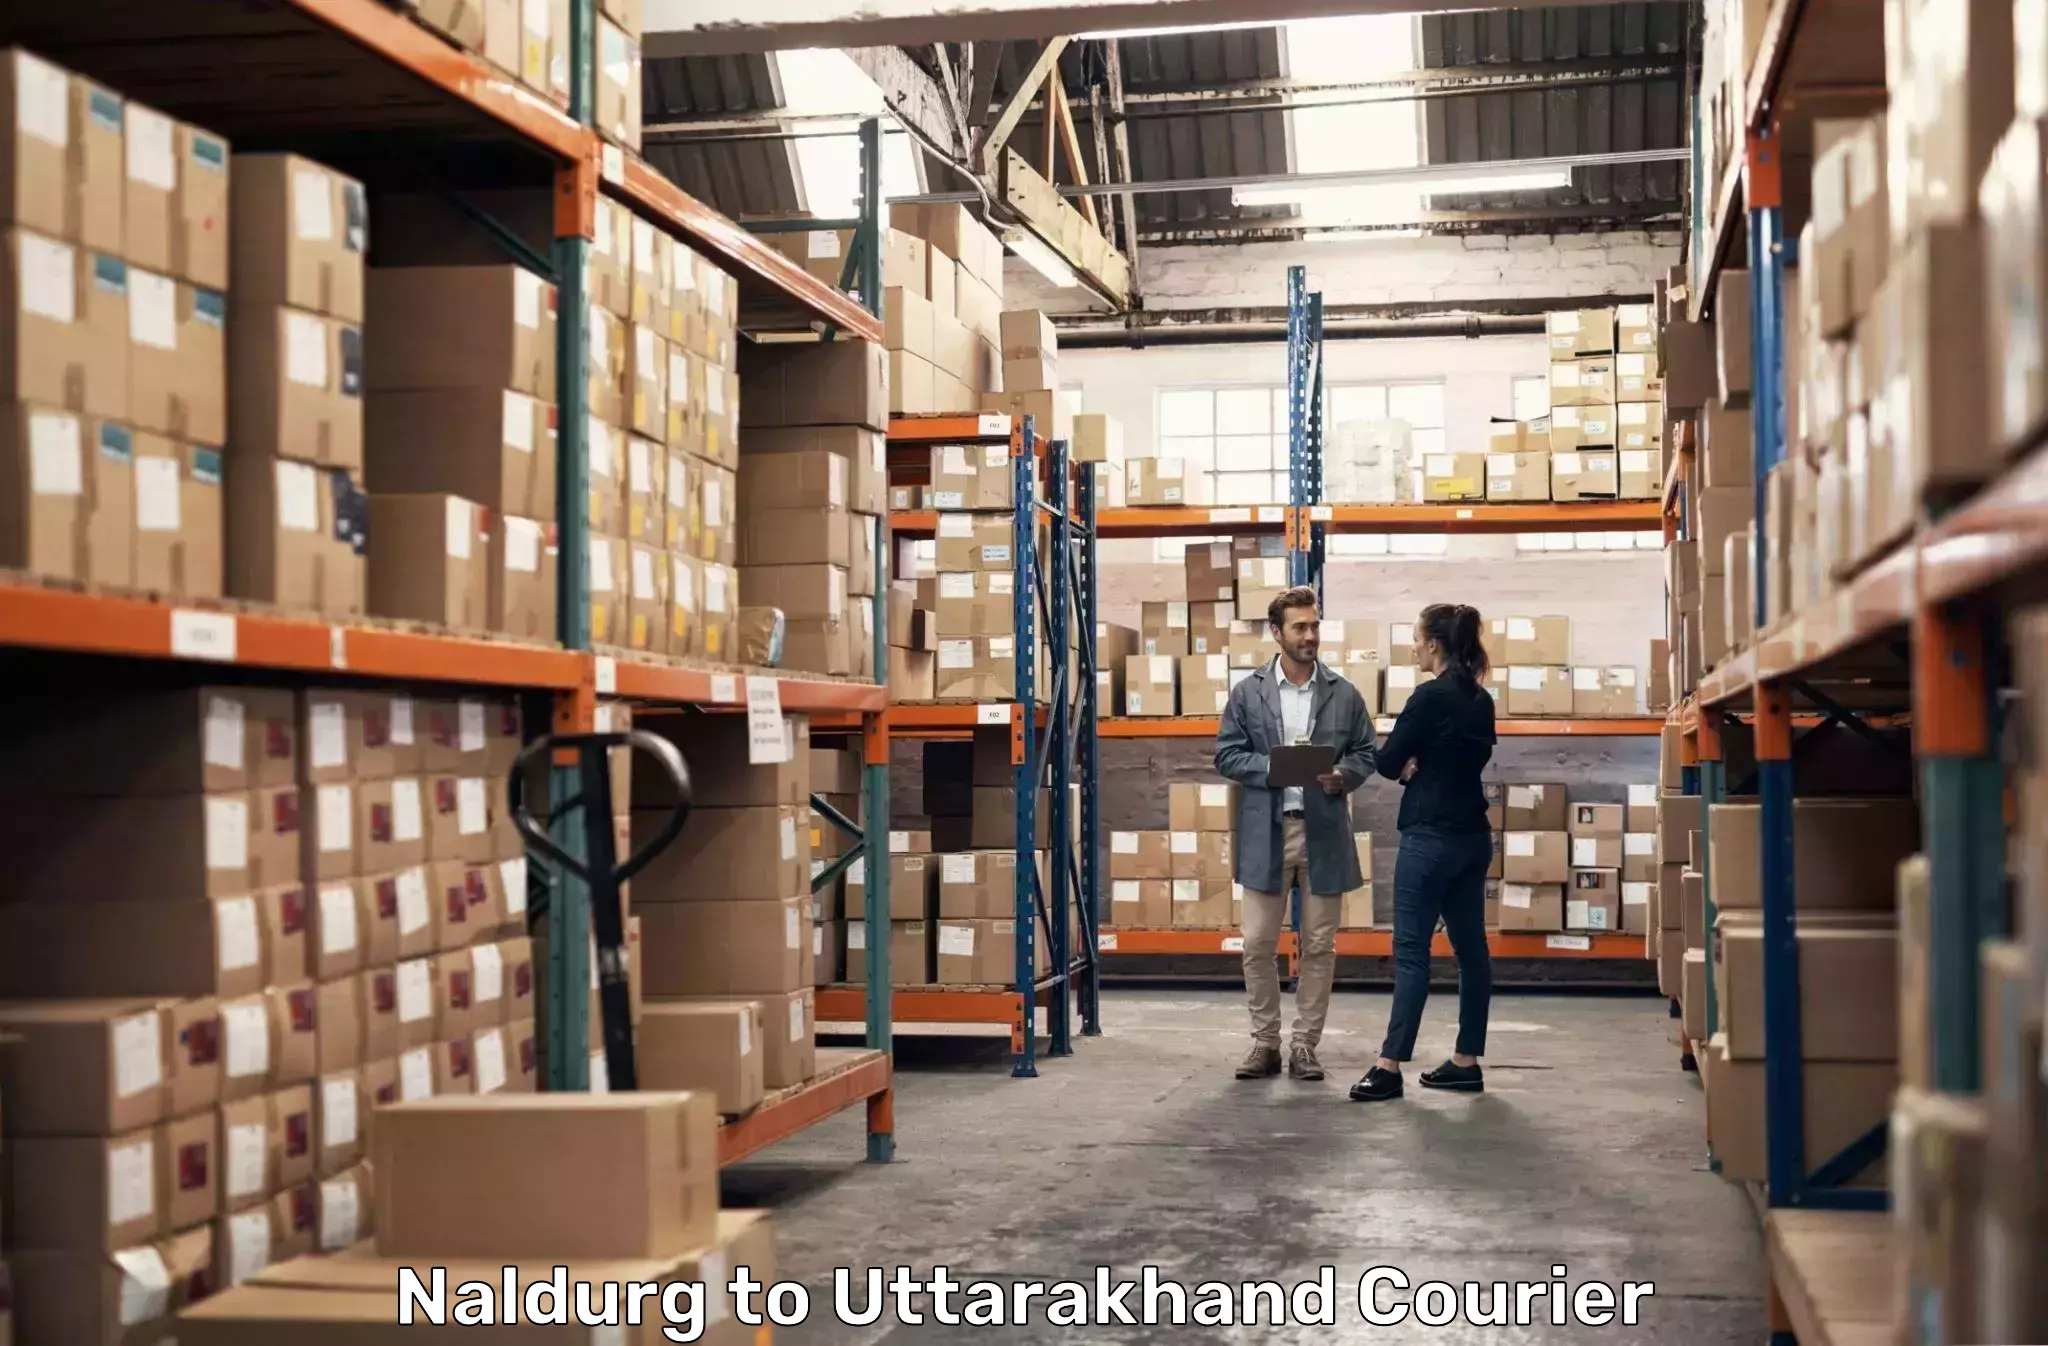 Courier service booking Naldurg to Didihat